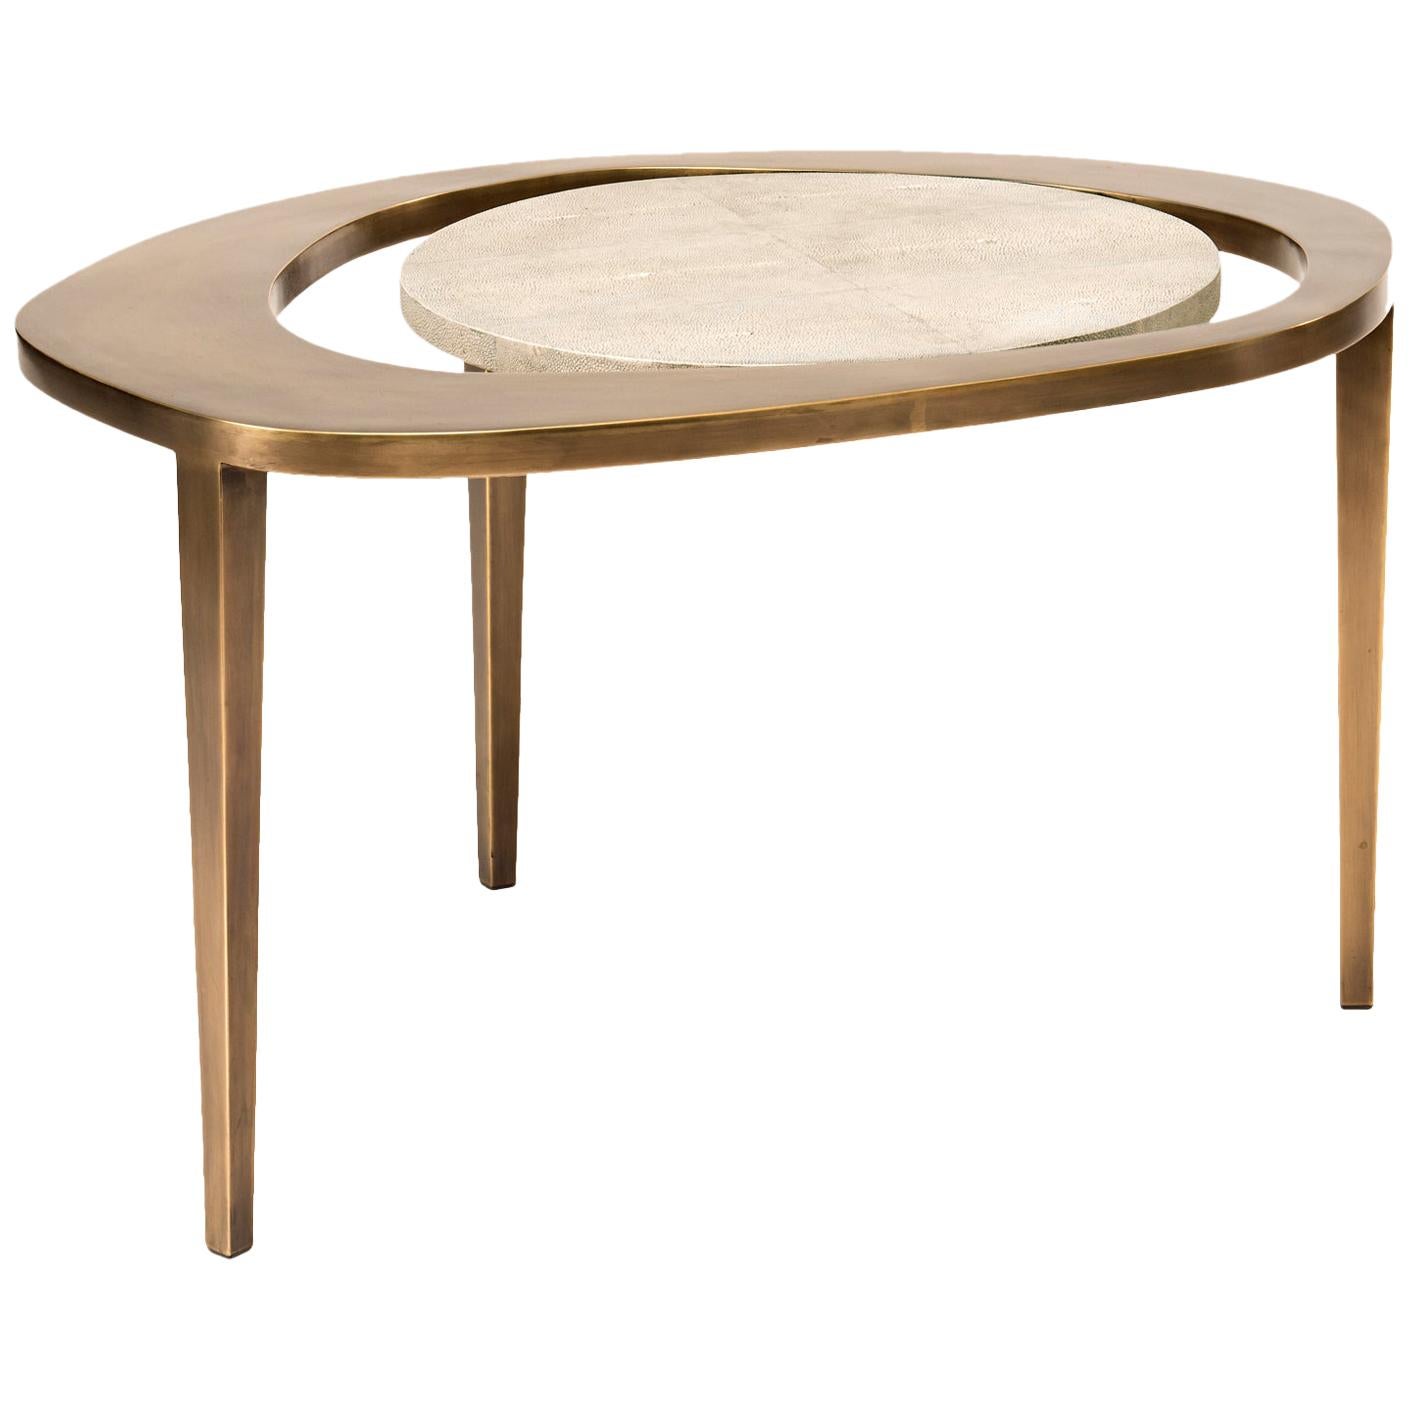 L'ensemble de trois tables basses gigognes en forme de paon est une pièce emblématique de R&Y Augousti et l'une de ses premières créations. L'ensemble comprend la grande, la moyenne et la petite taille. Les pièces sont à la fois minimalistes et